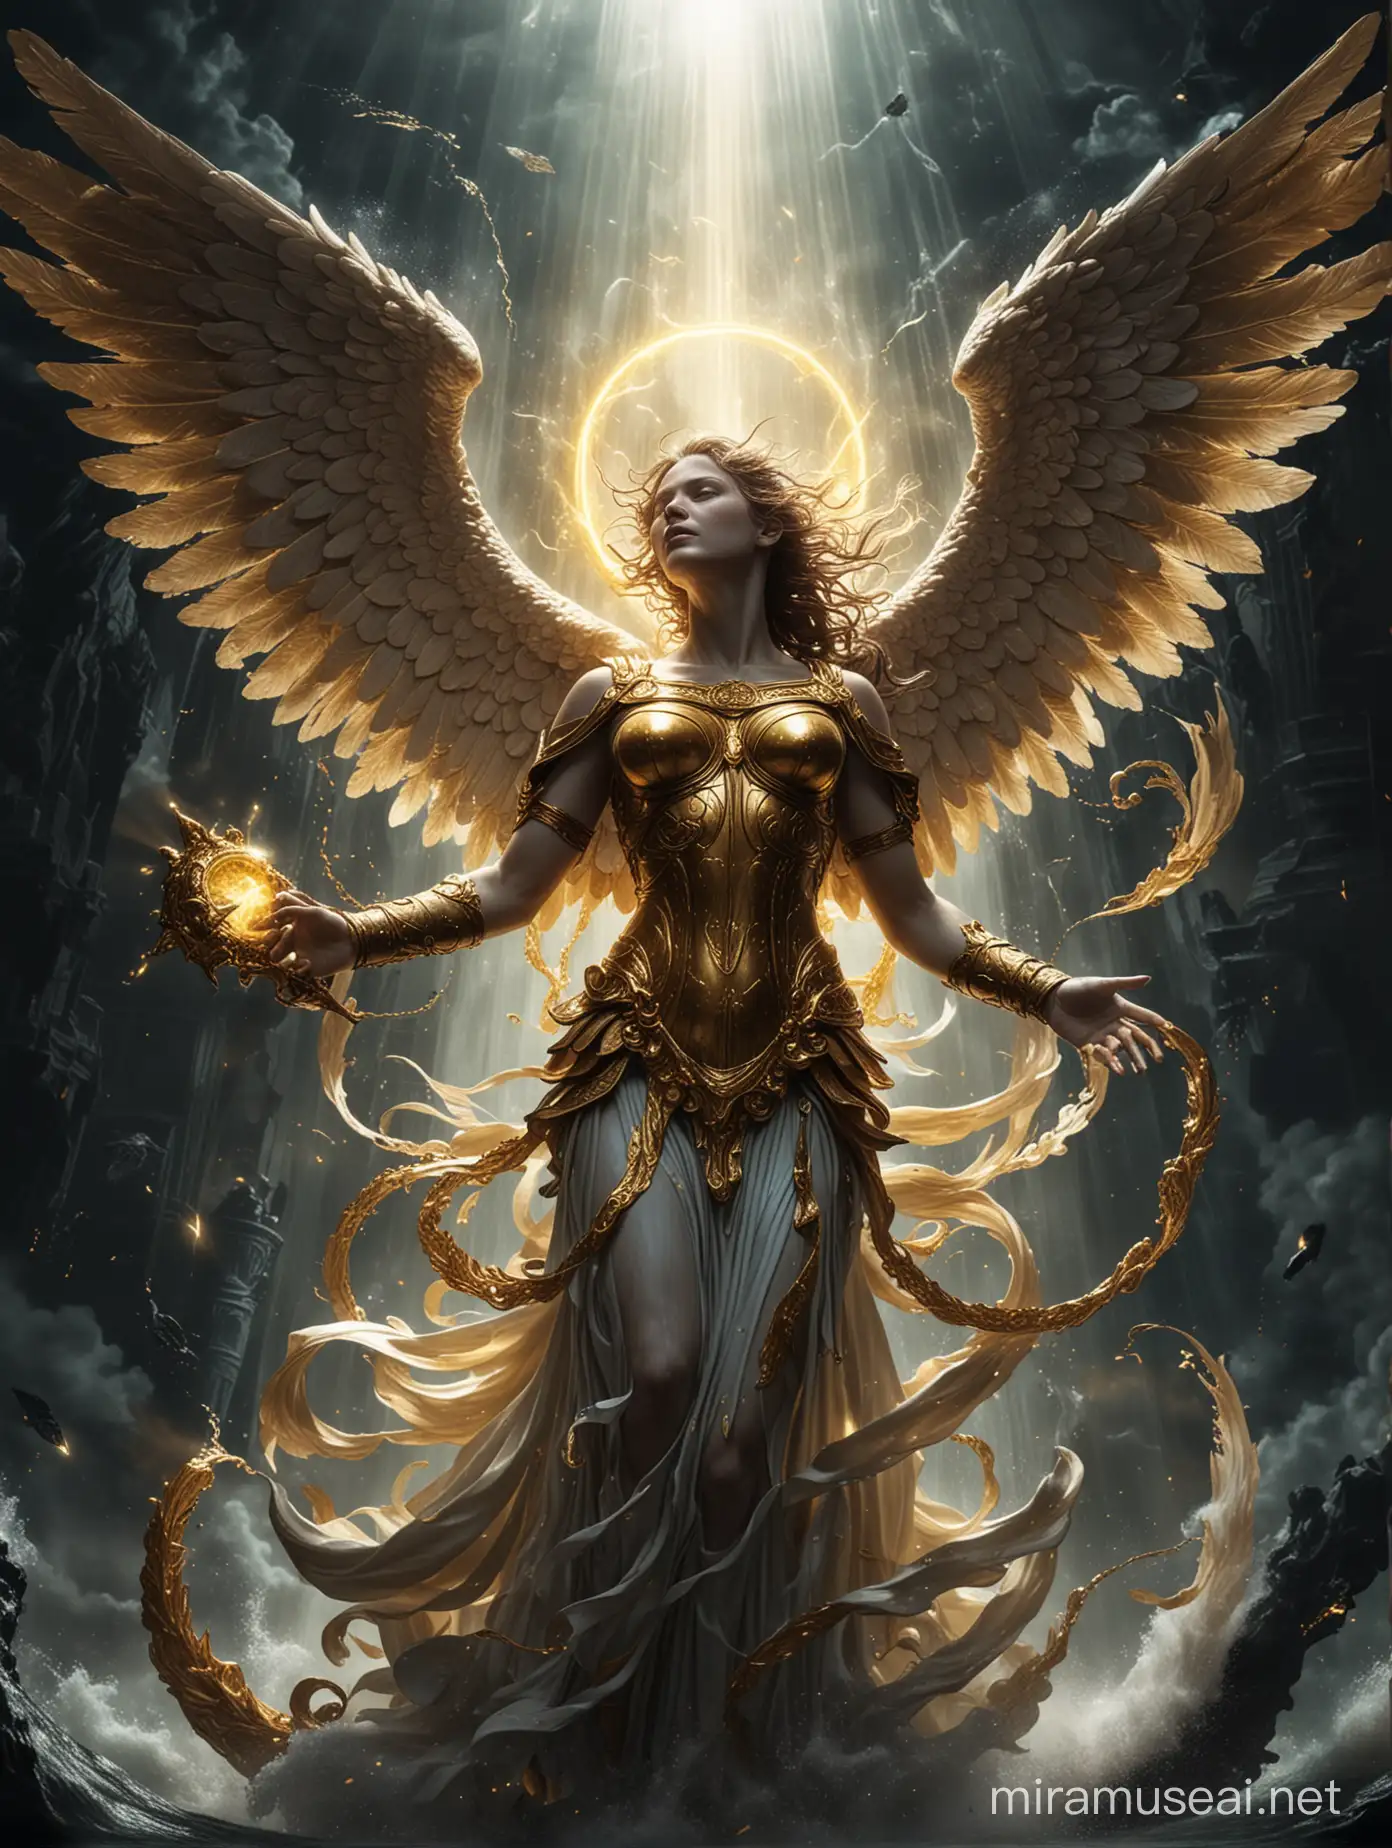 Um anjo com asas douradas dando um soco na cara do leviatã. Fundo da figura preto com luz  preta brilhando sobre eles.